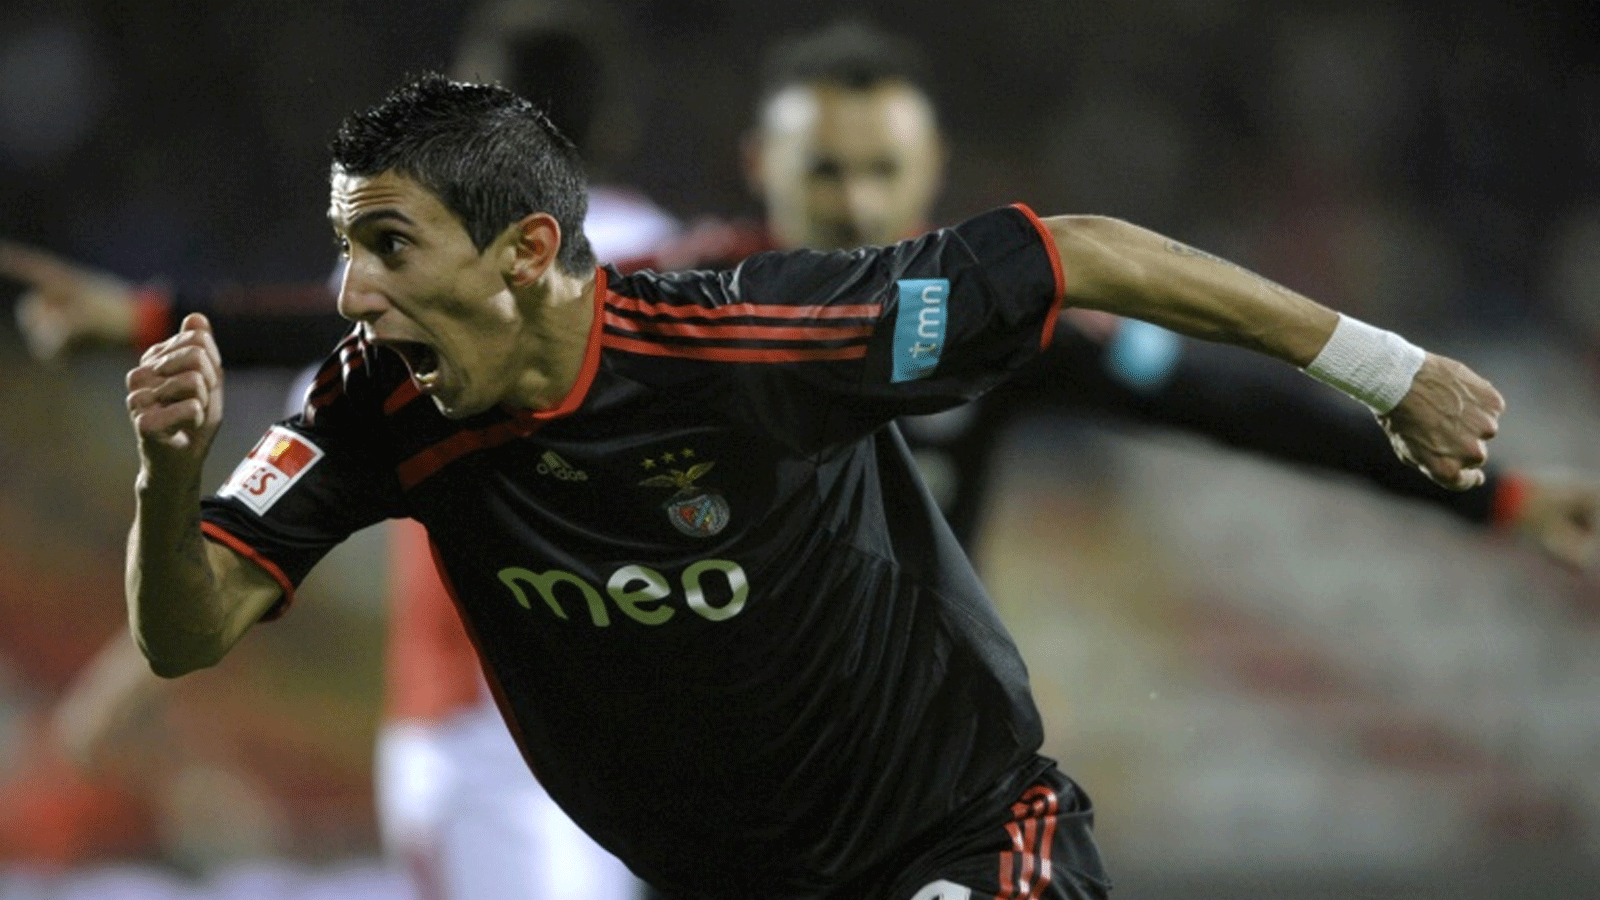 الأرجنتيني أنخل دي ماريا بقميص بنفيكا البرتغالي خلال مباراة في الدوري المحلي ضد ليشوش في 27 شباط/فبراير 2009